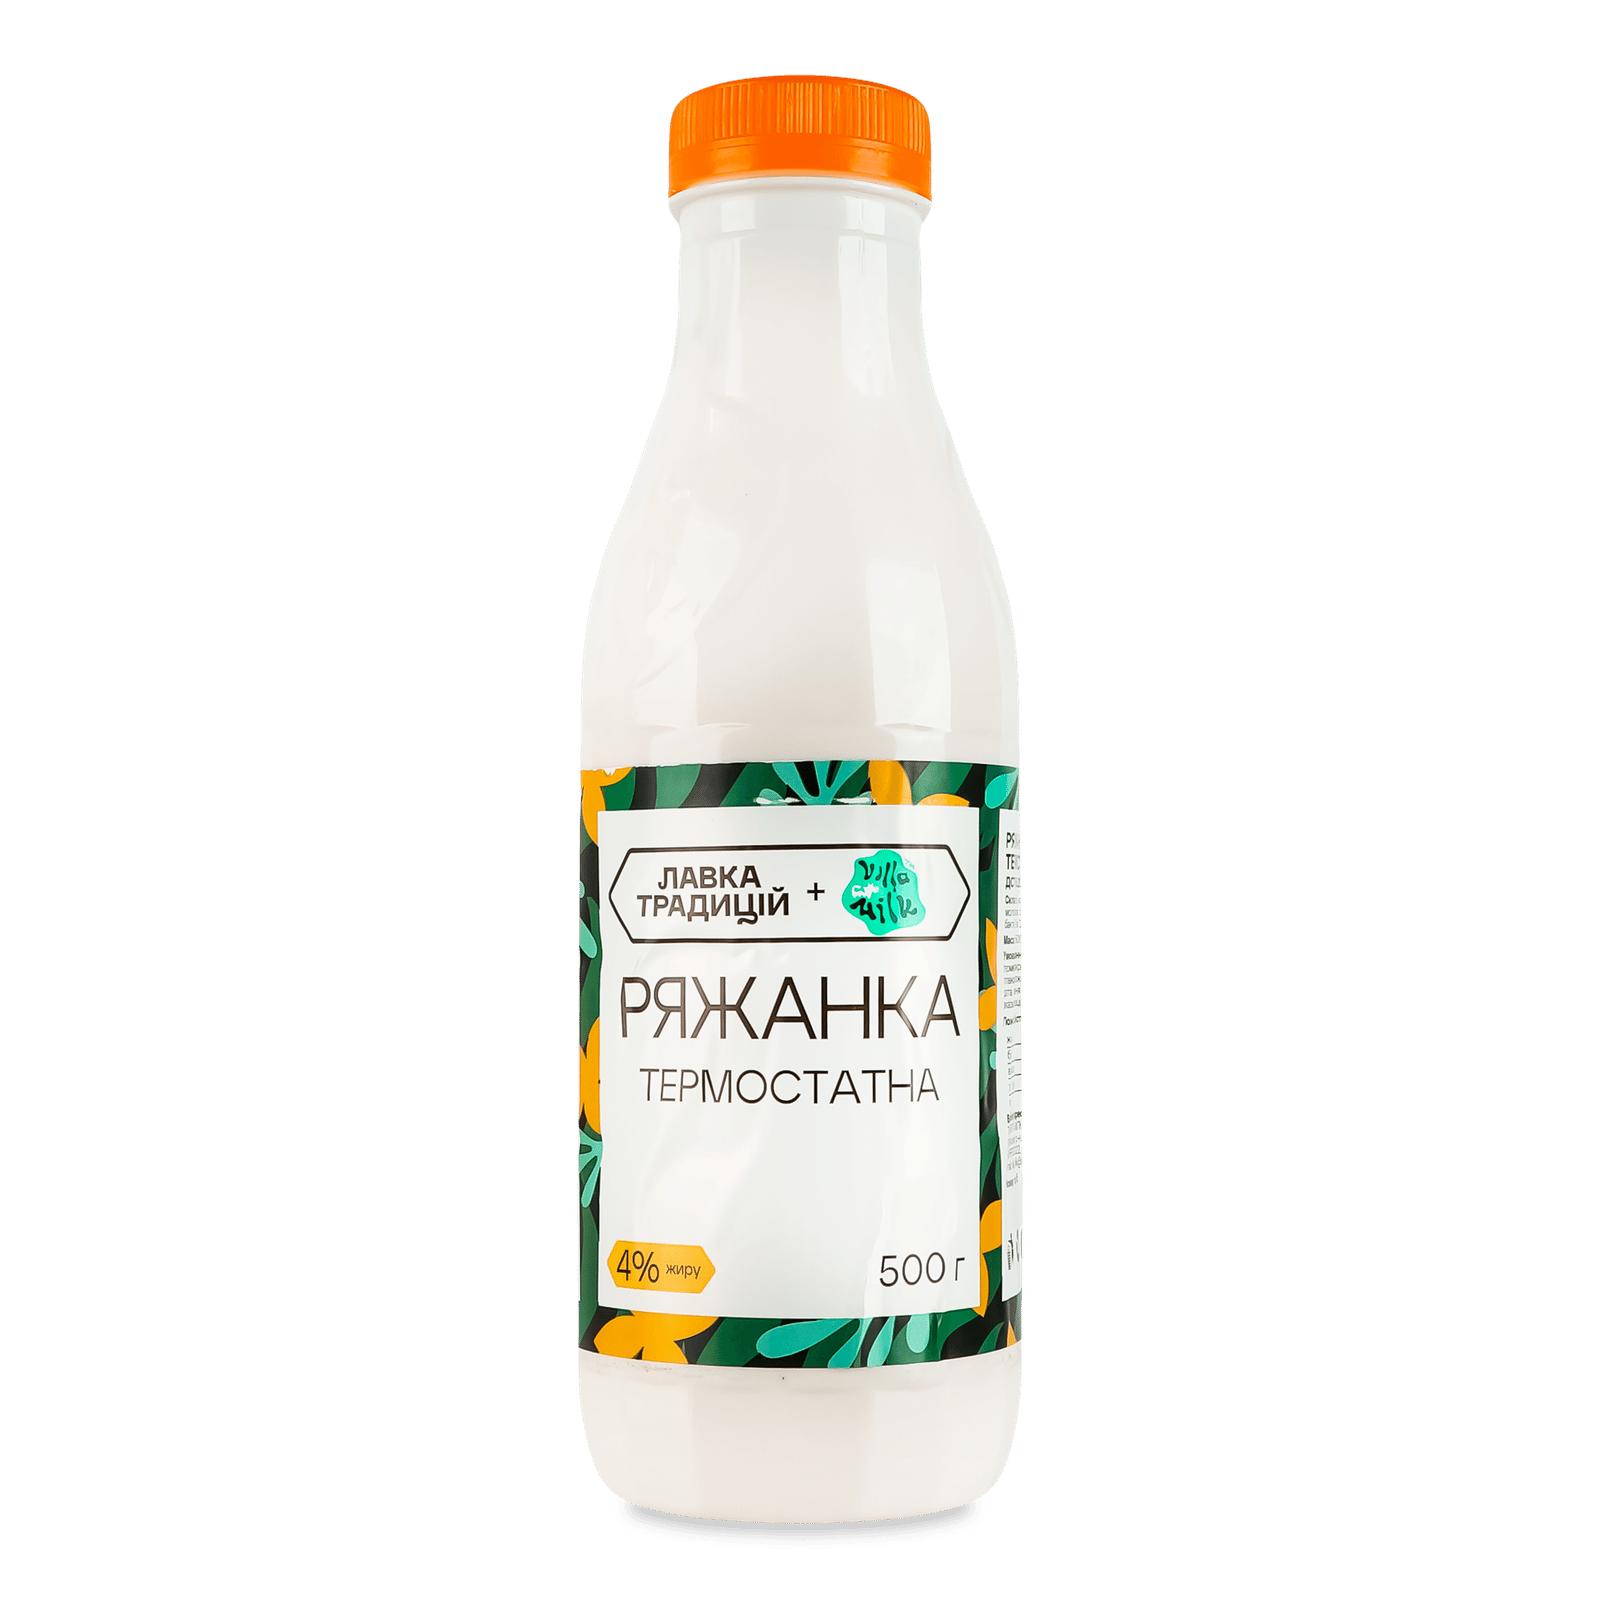 Ряжанка Лавка традицій Villa Milk термостатна 4% - 1